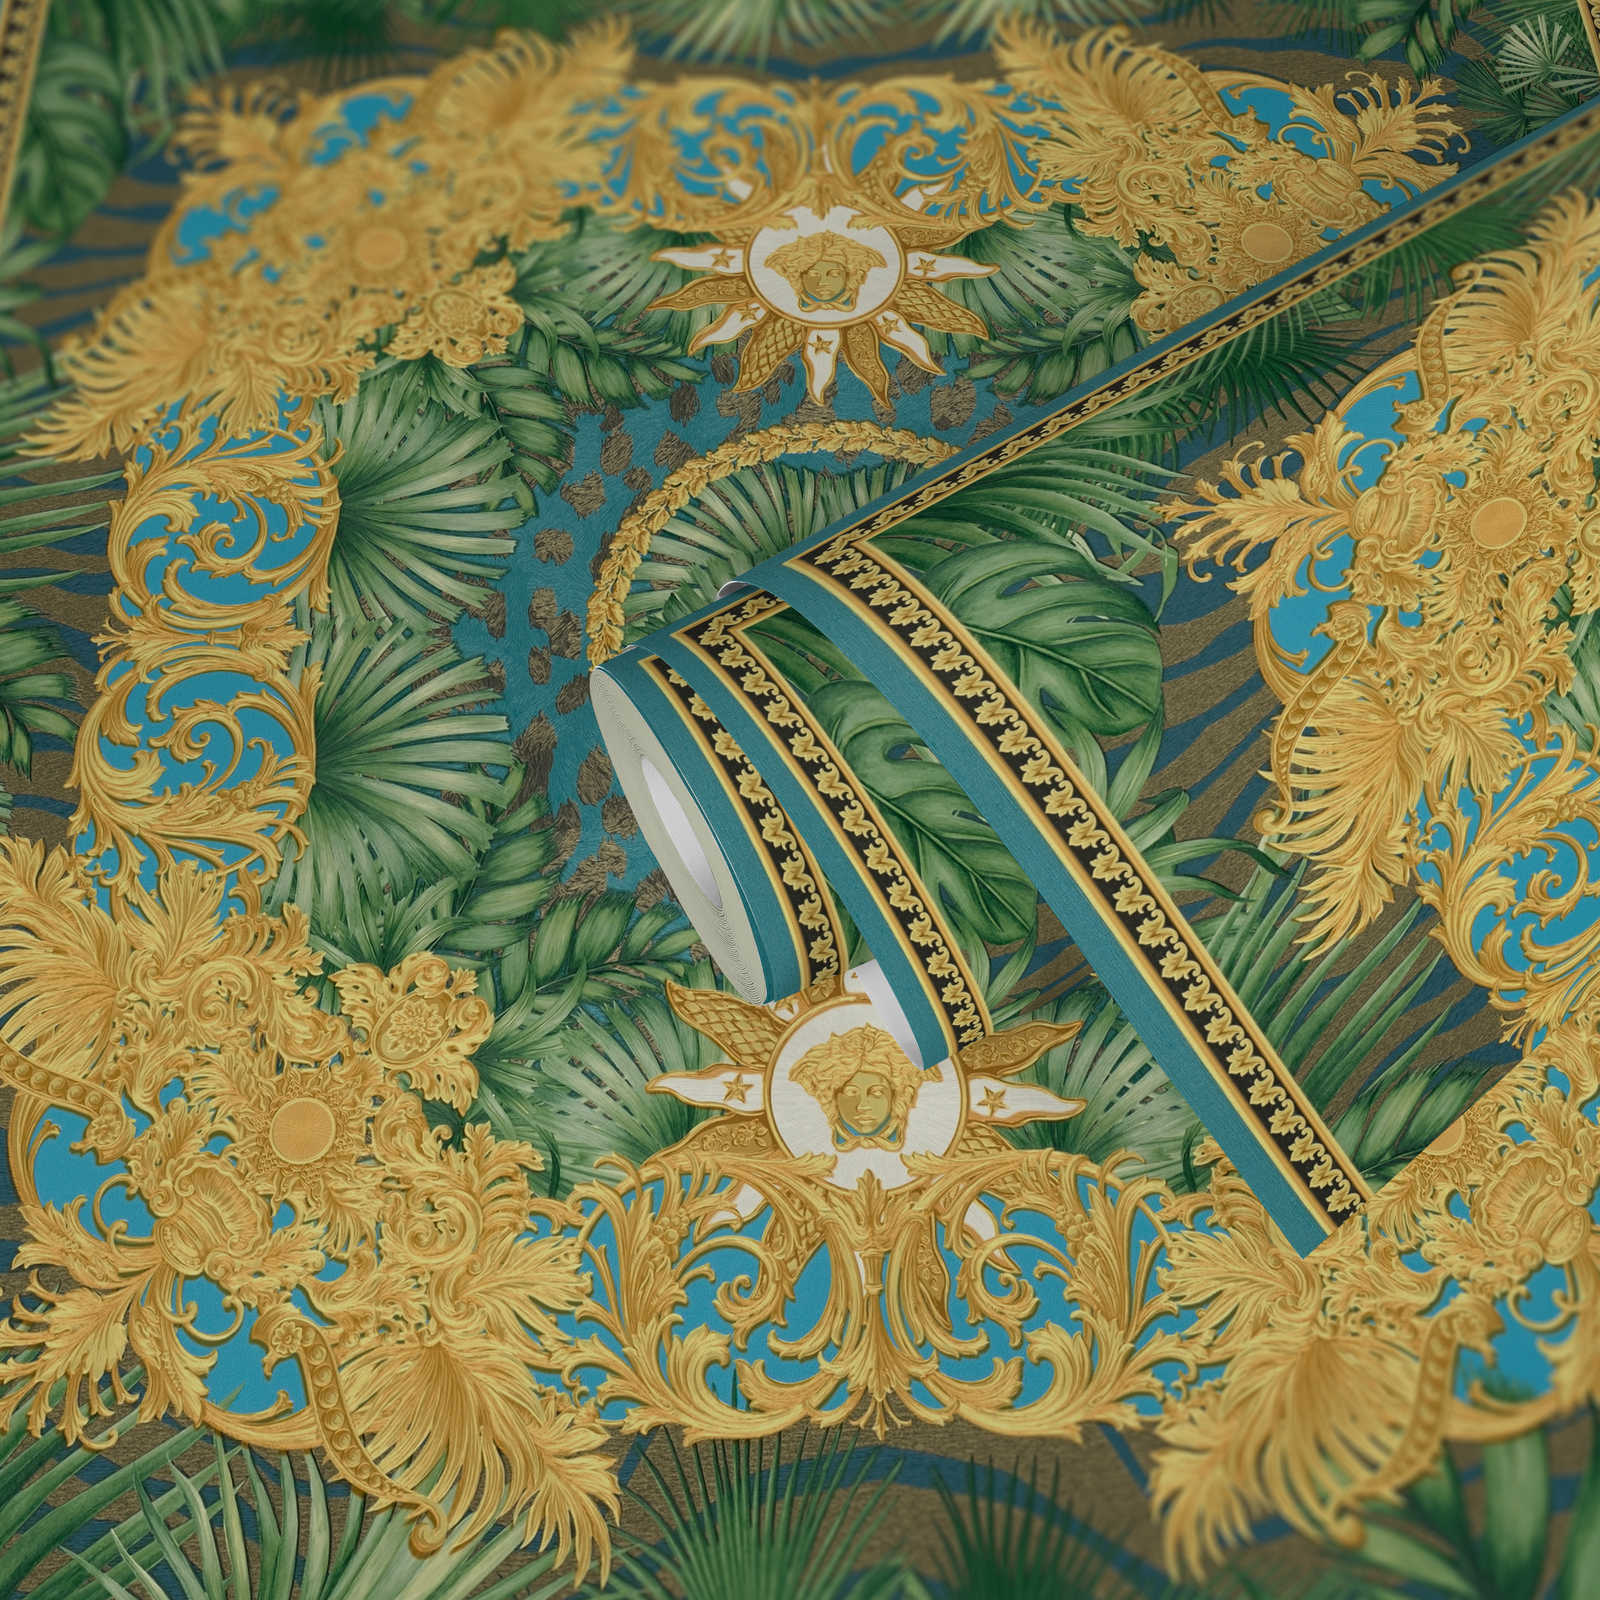             VERSACE Tapete Dschungel und Ornament Motiv – Grün, Metallic
        